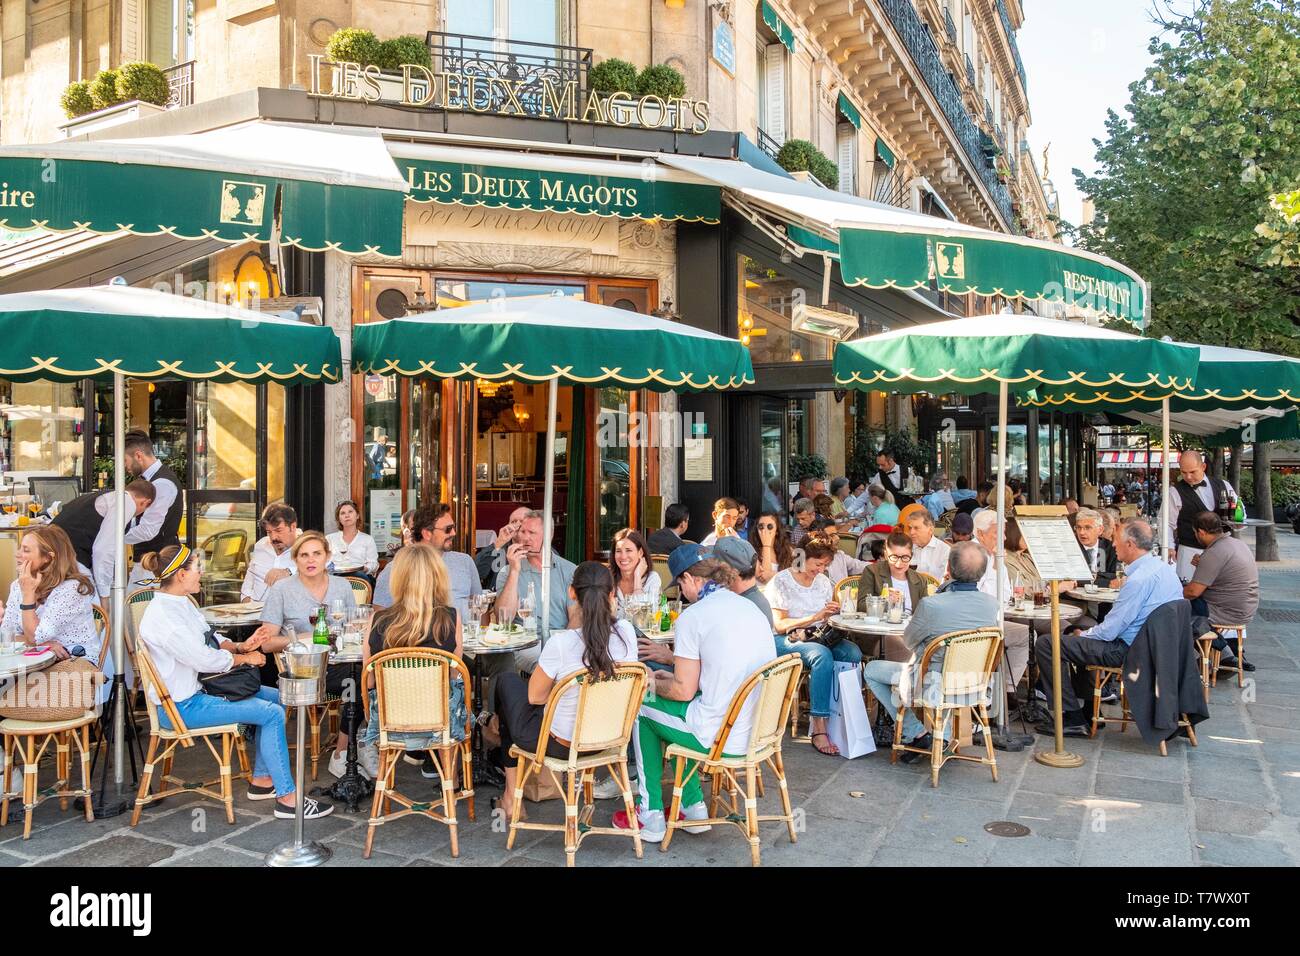 France, Paris, Saint Germain des Pres district, the Deux Magots restaurant Stock Photo